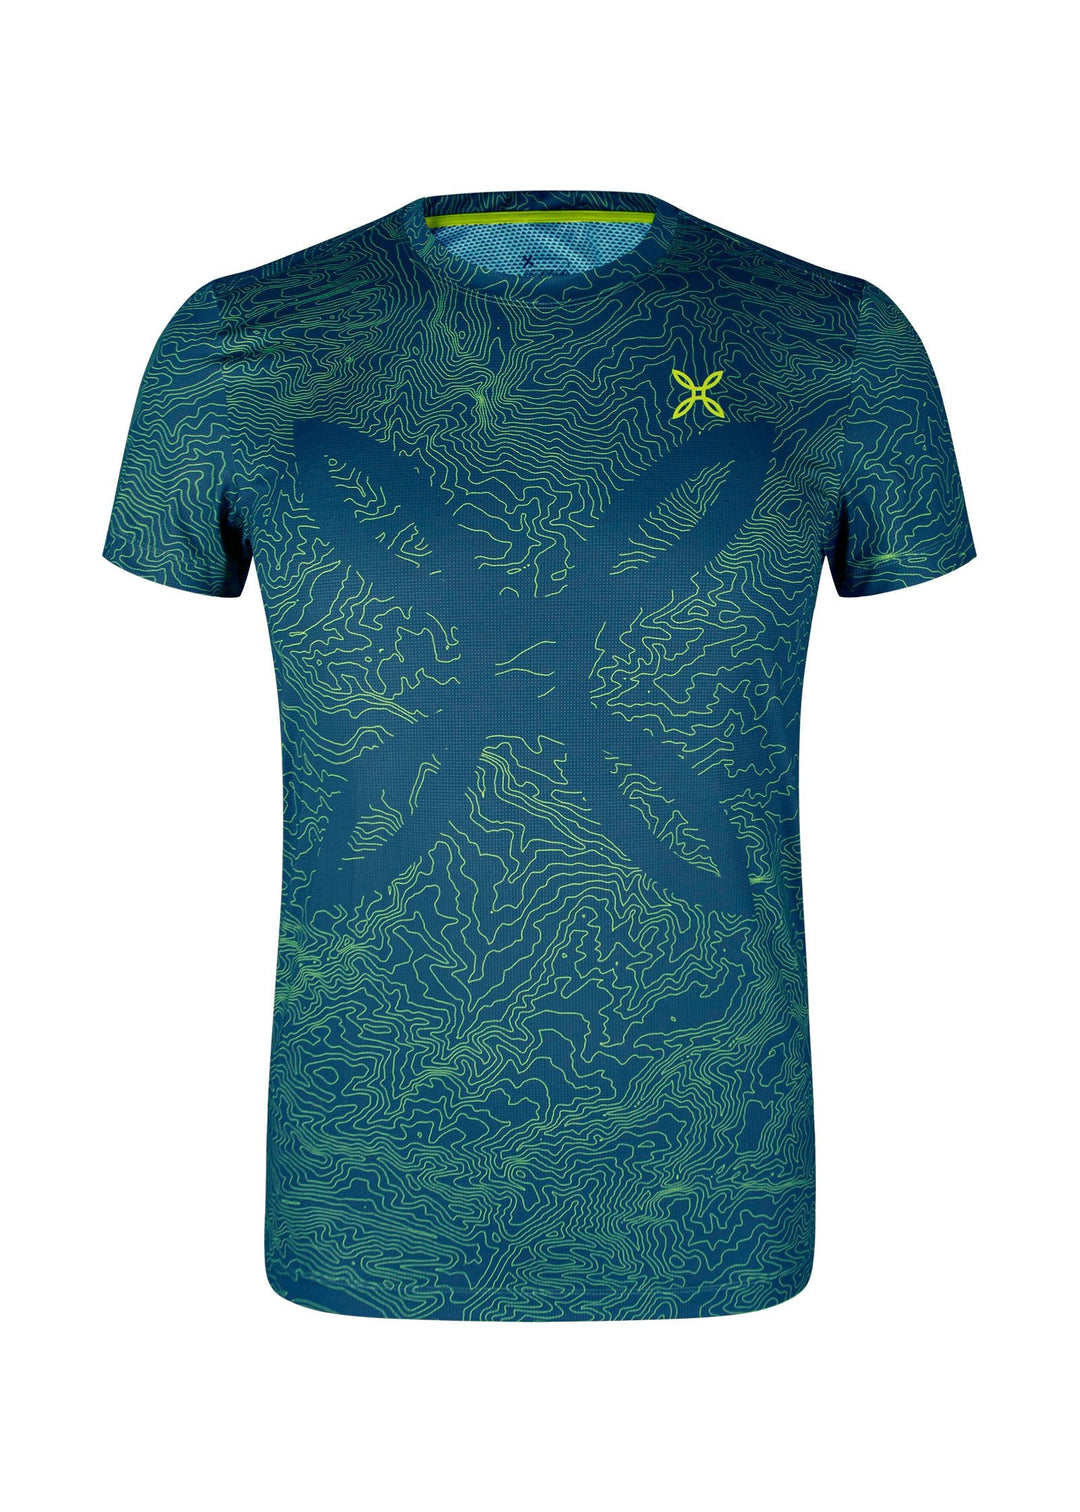 Topographic Sublime T-Shirt - Deep Blue/Verde Lime (8747) - Bshop